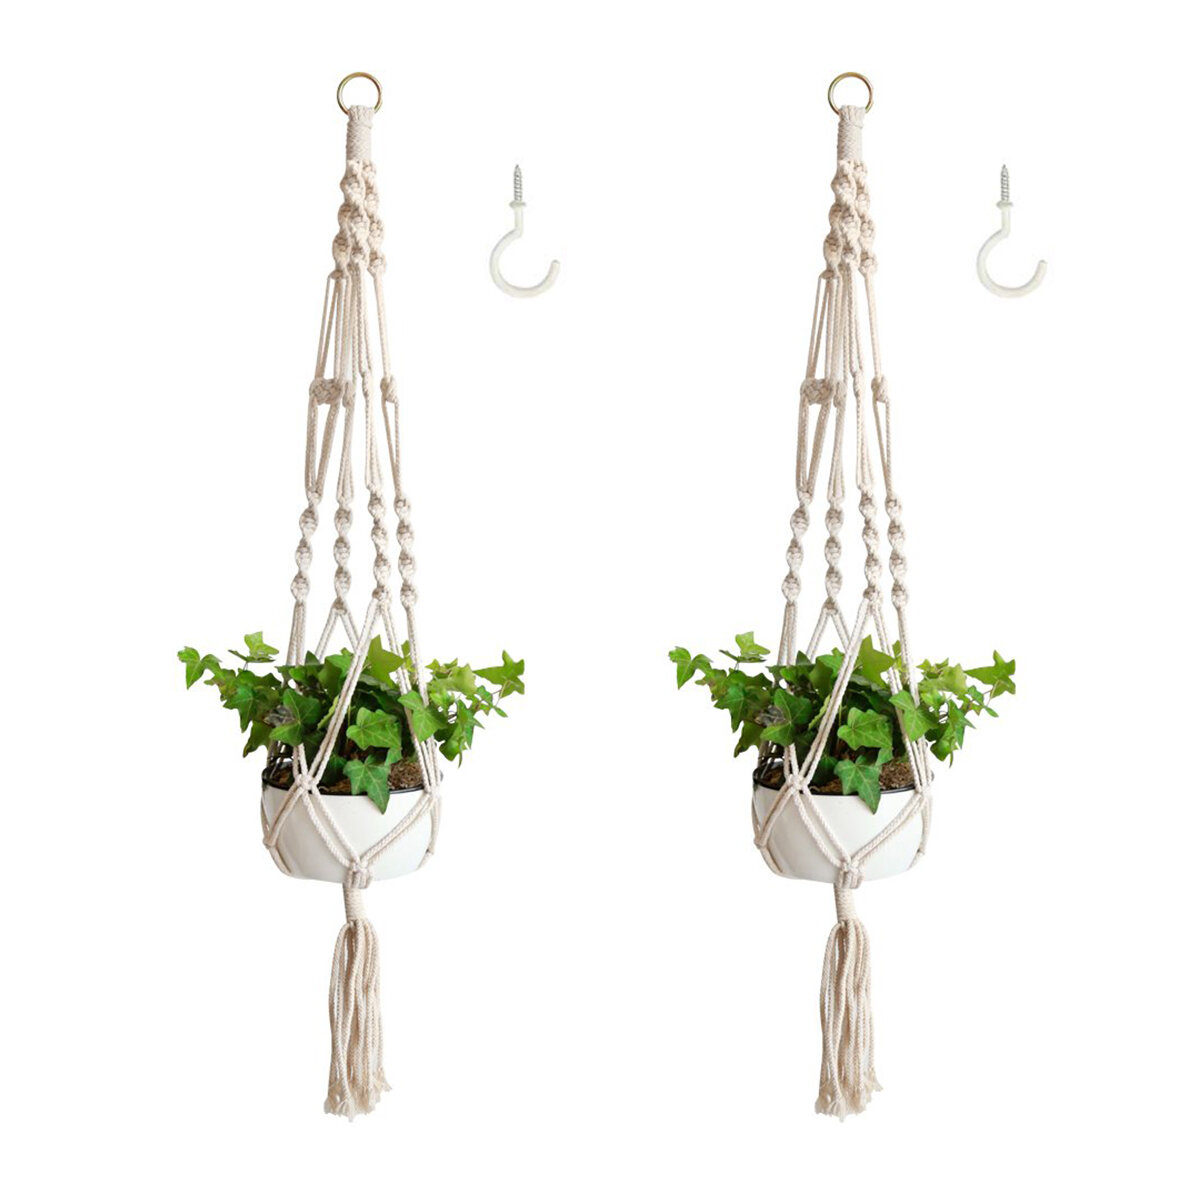 Image of 2 Pack Macrame Plant Hanger Flower Pot Holder Hanging Rope Basket Garden Decor